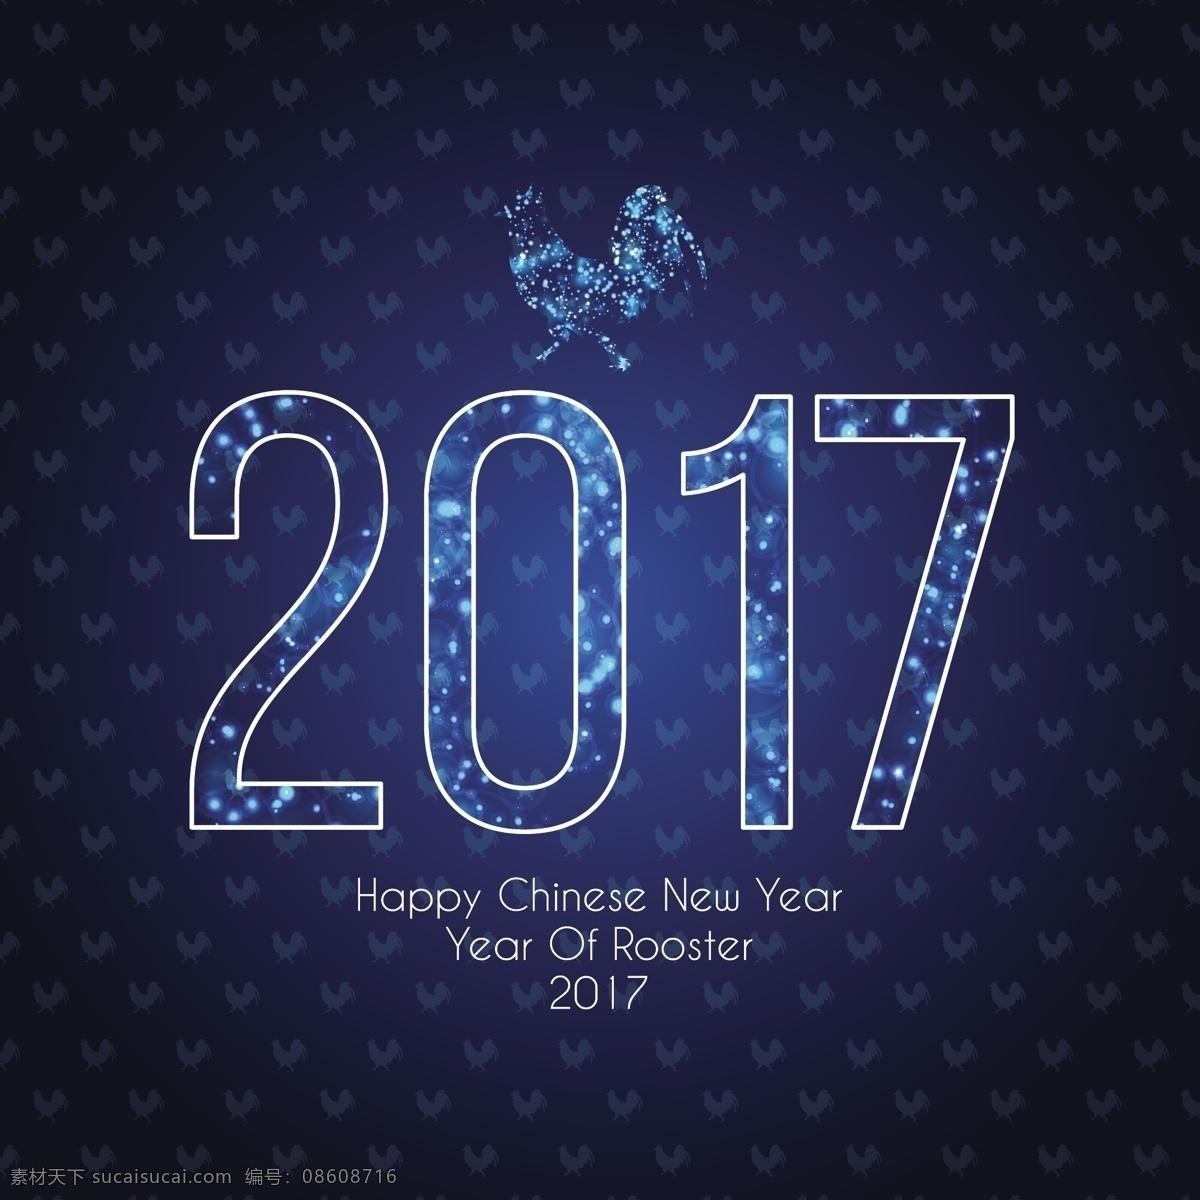 中国 新年 明亮 蓝色 背景 冬天 新的一年 2017 人 动物 庆祝 快乐 节日 事件 的背景下 公鸡 十二月 东方 今年 亚洲的节日